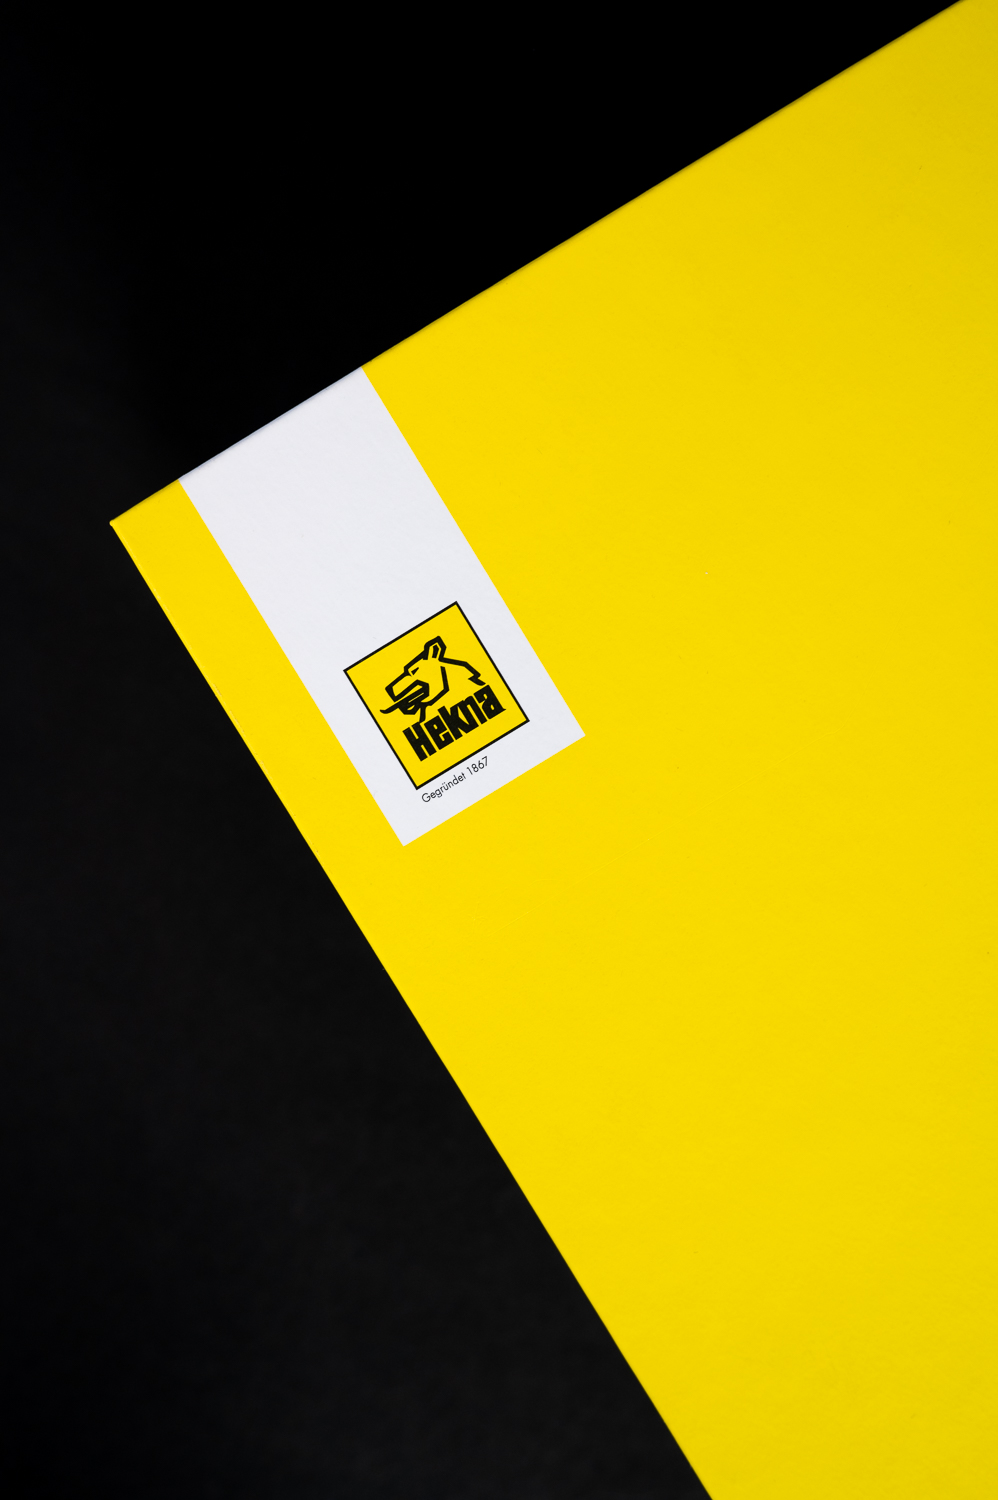 Die Rückseite des Kataloges ist schlicht in gelb gehalten.